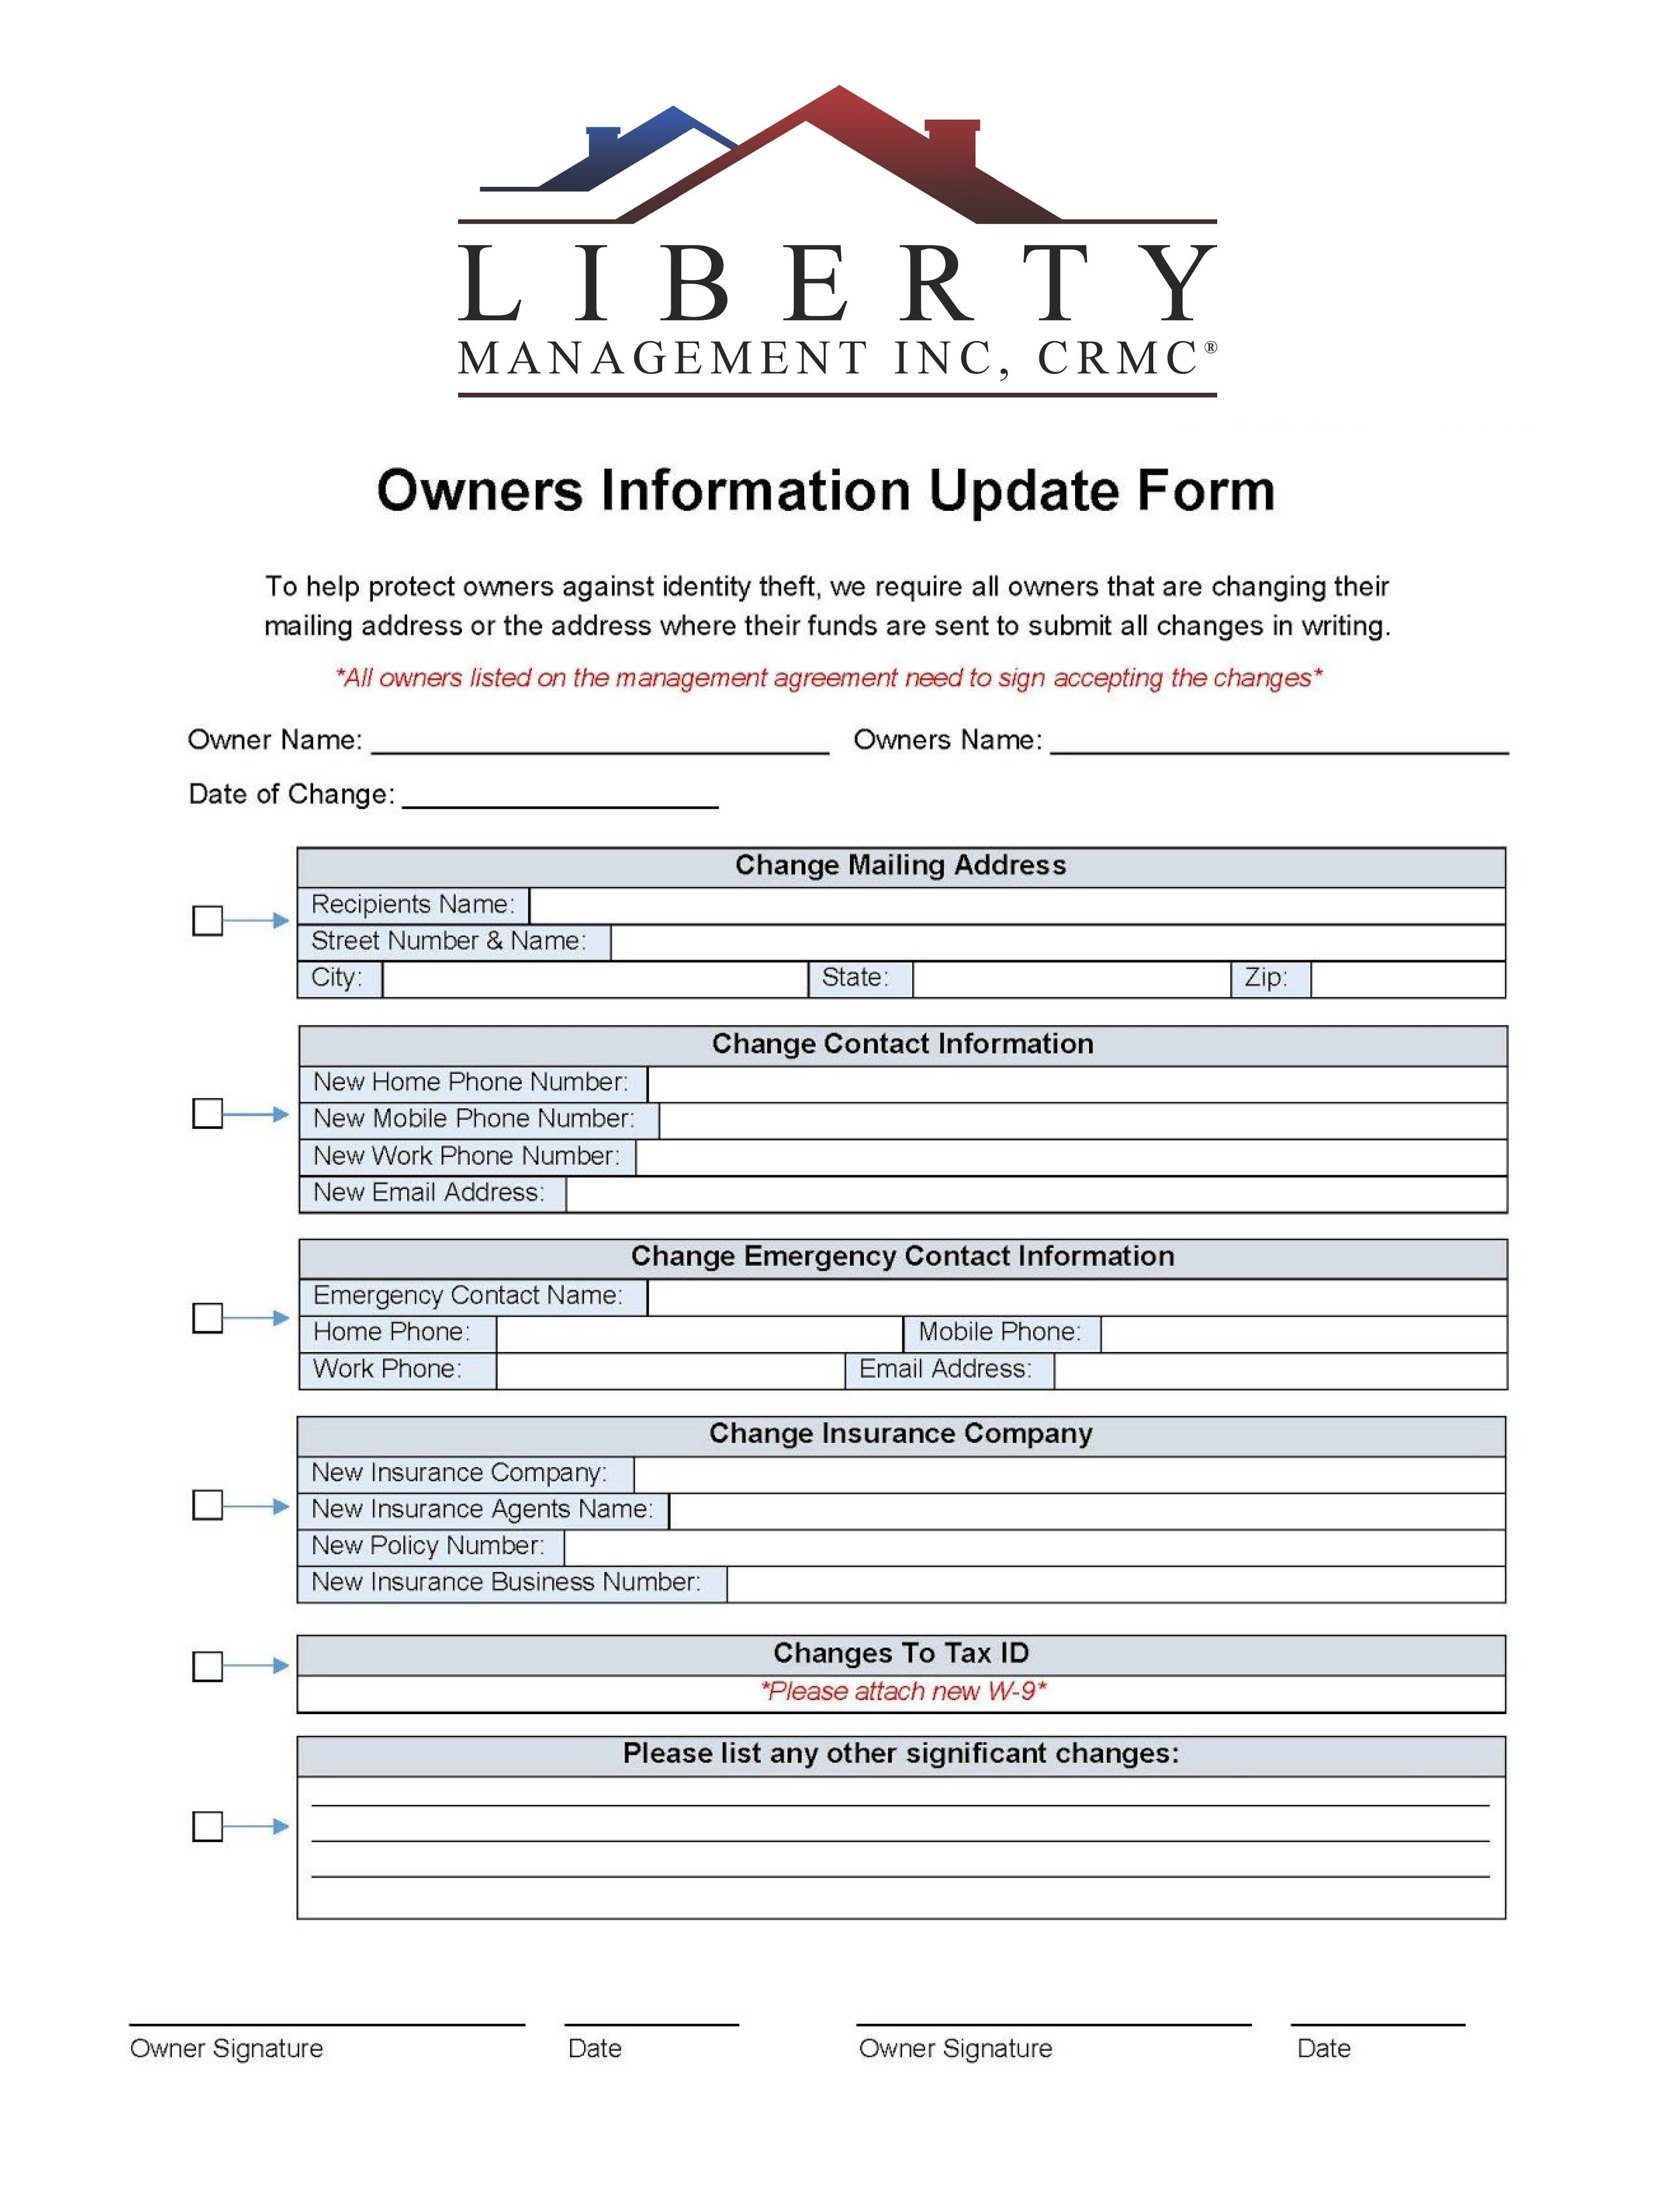 Owner Information Up-Date Form